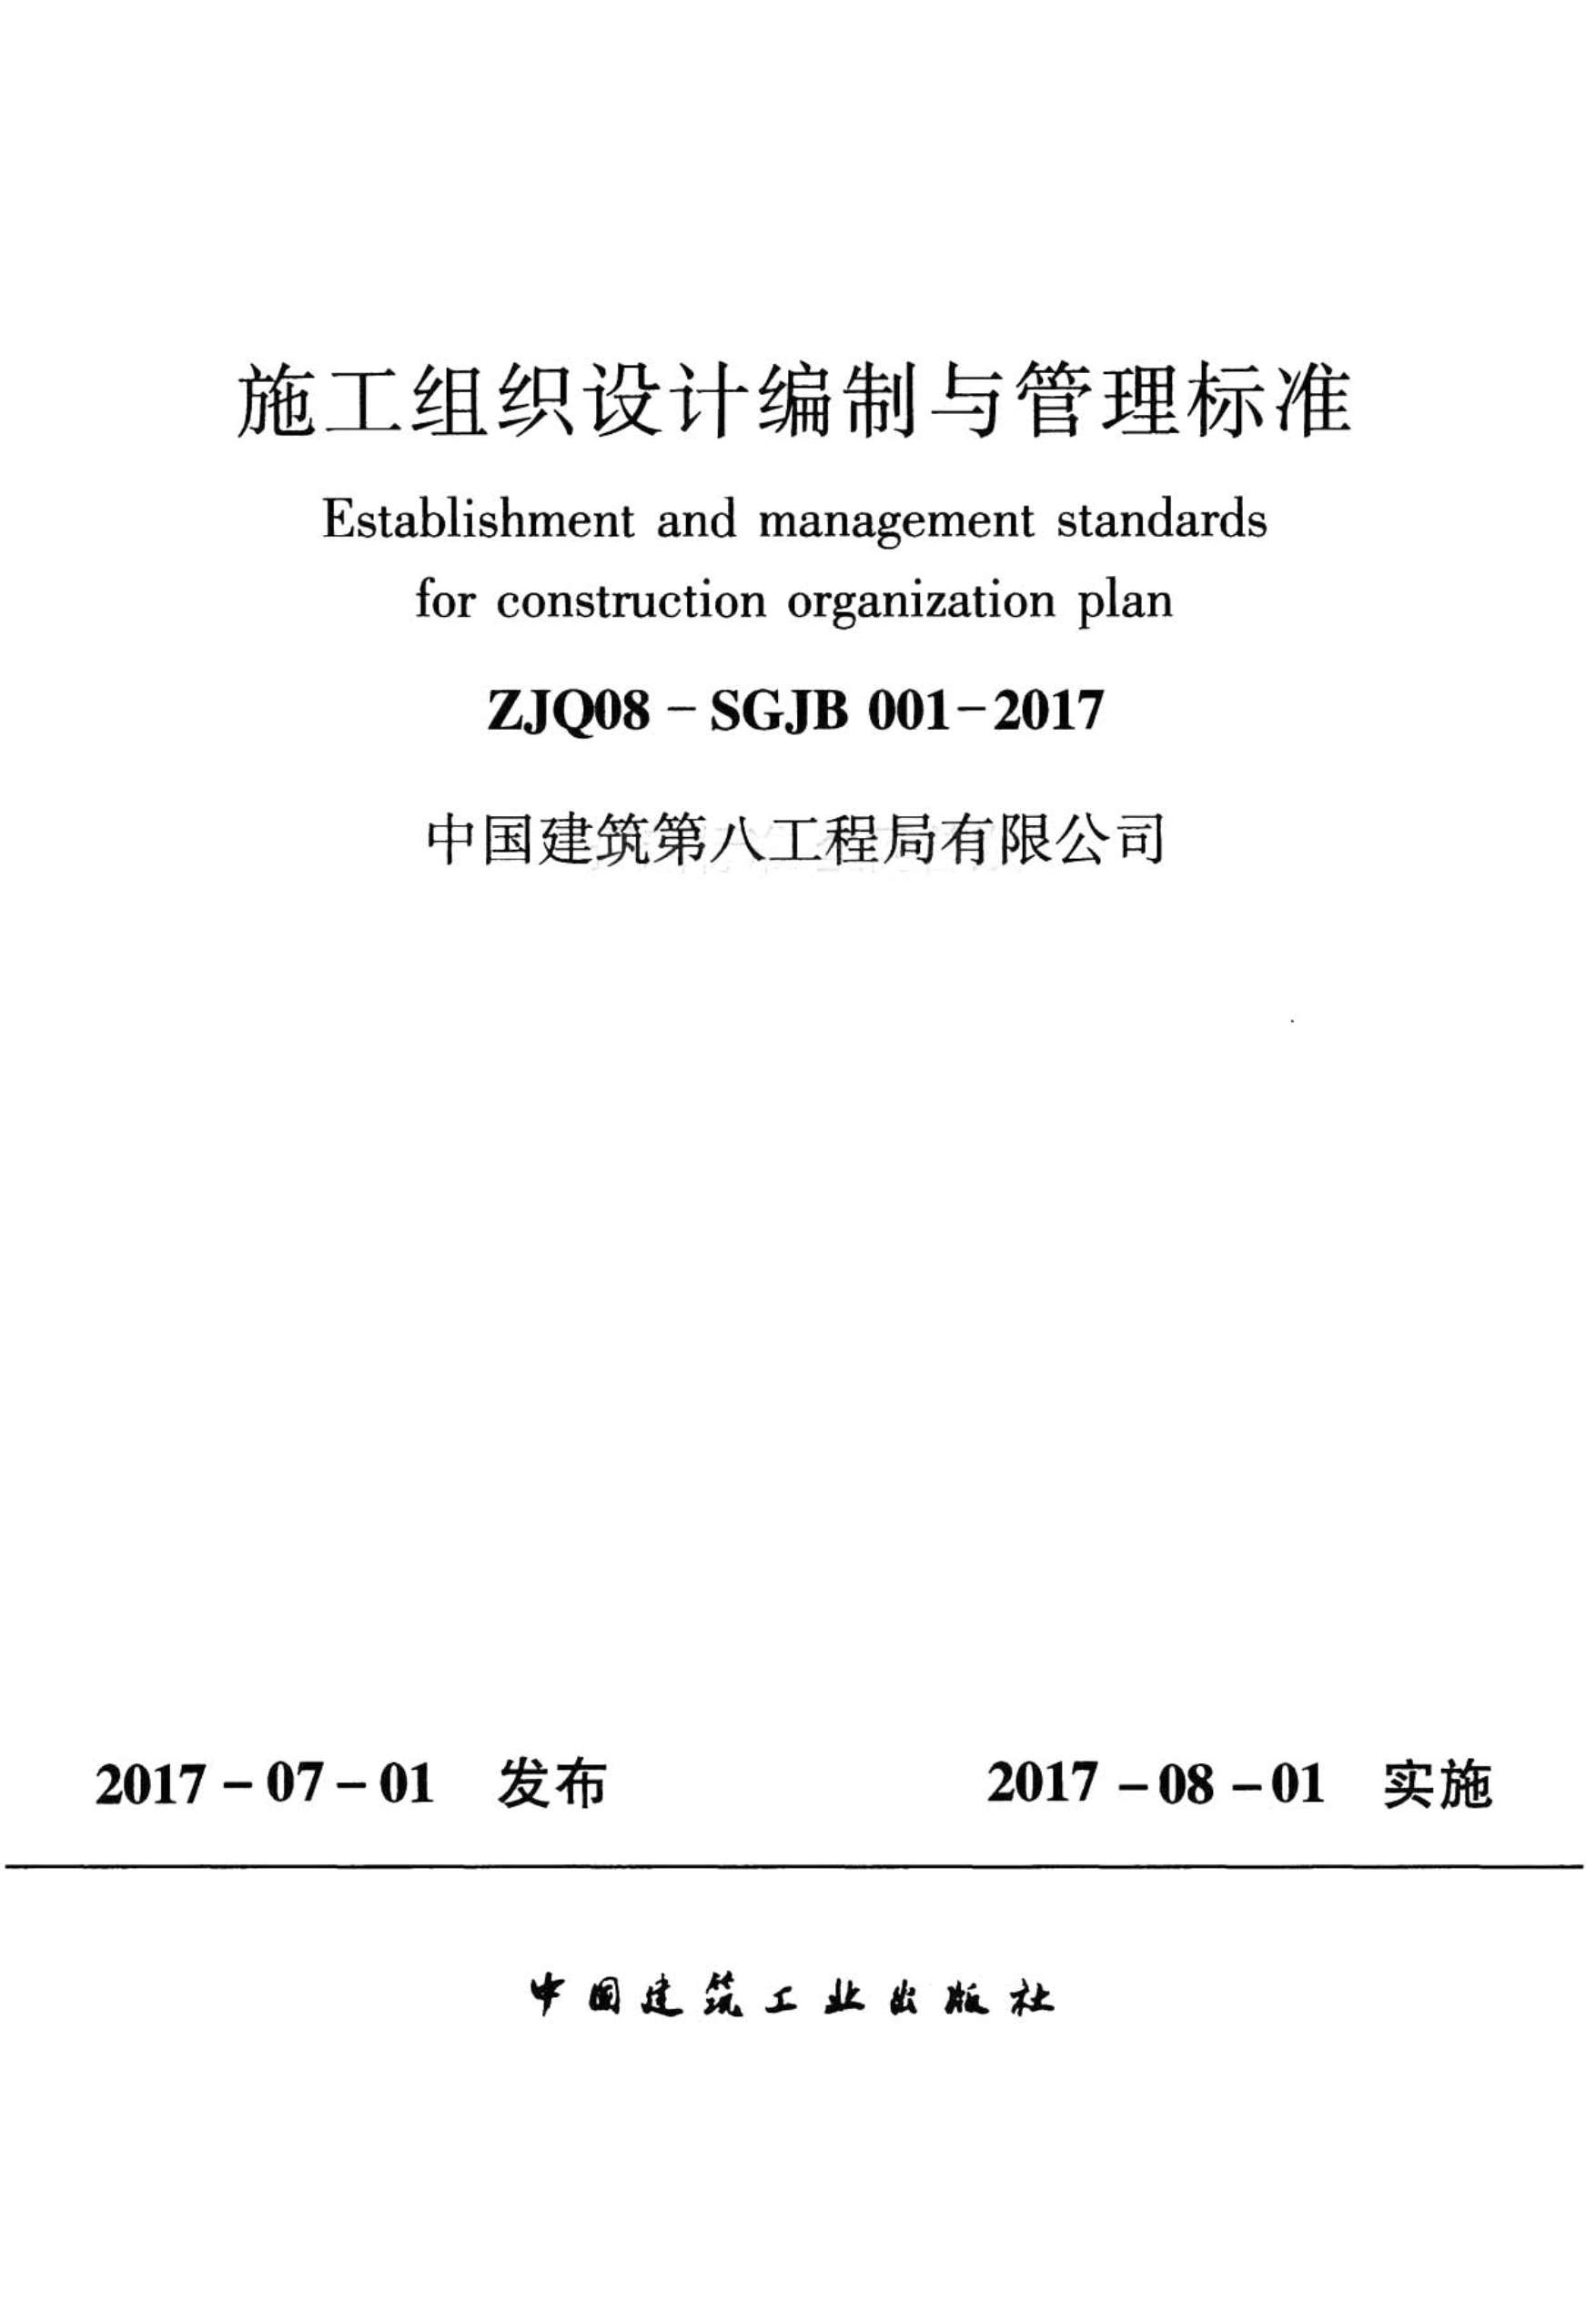 施工组织设计编制与管理标准ZJQ08-SGJB001-2017